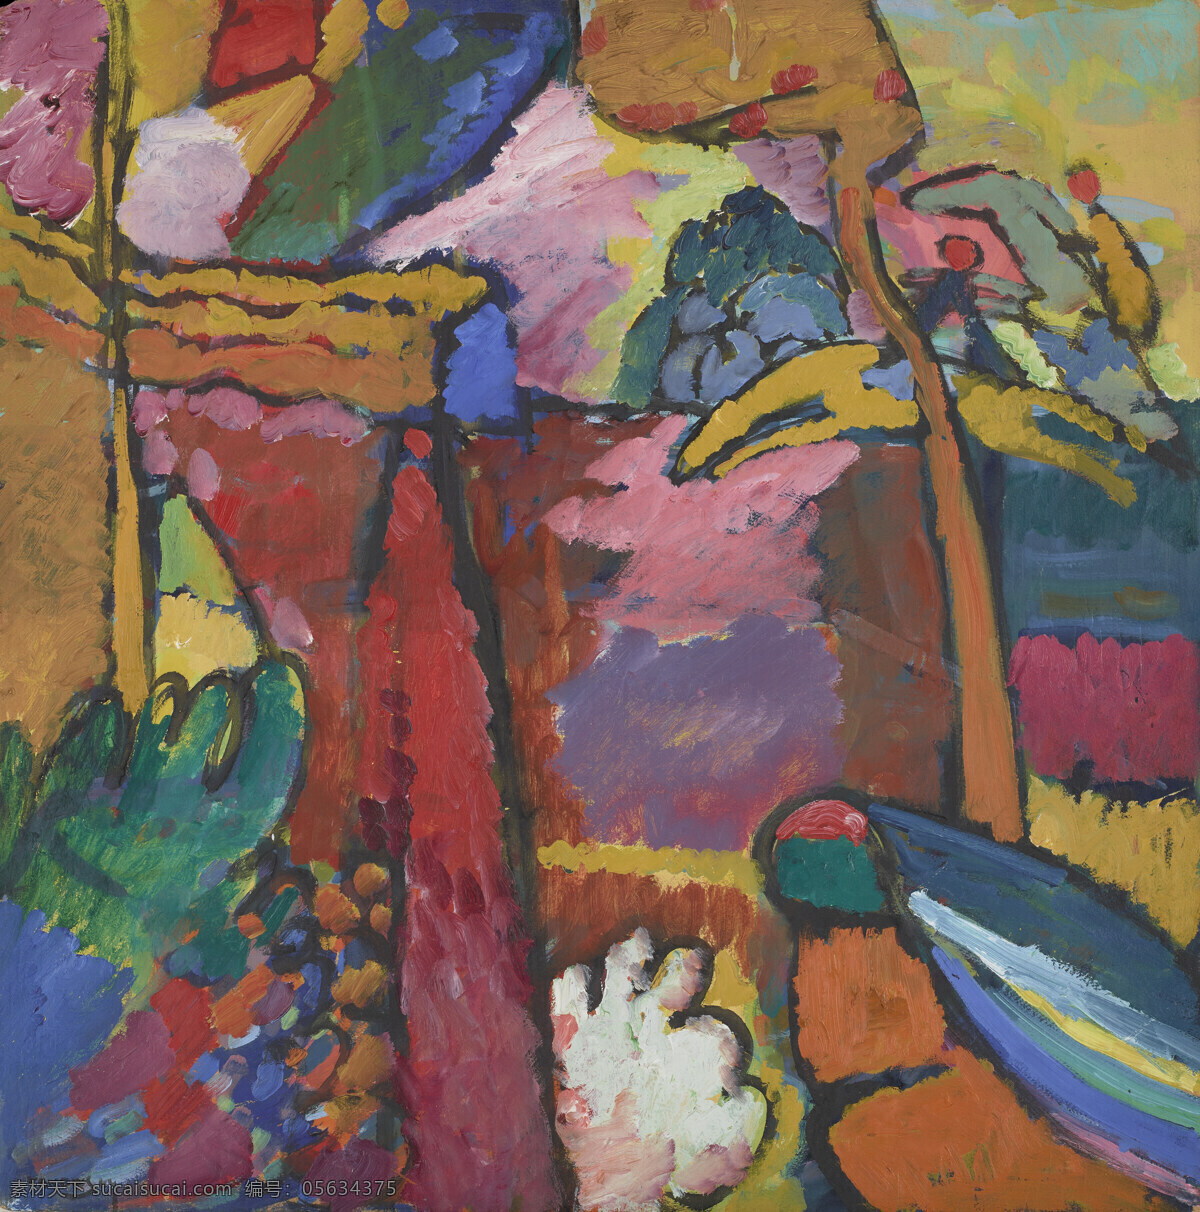 创意 色彩 抽象 油画 康丁斯基 绘画 彩色颜料 涂鸦 抽象画 抽象油画 抽象图案 装饰画 艺术画 几何线条 色块拼接 文化艺术 绘画书法